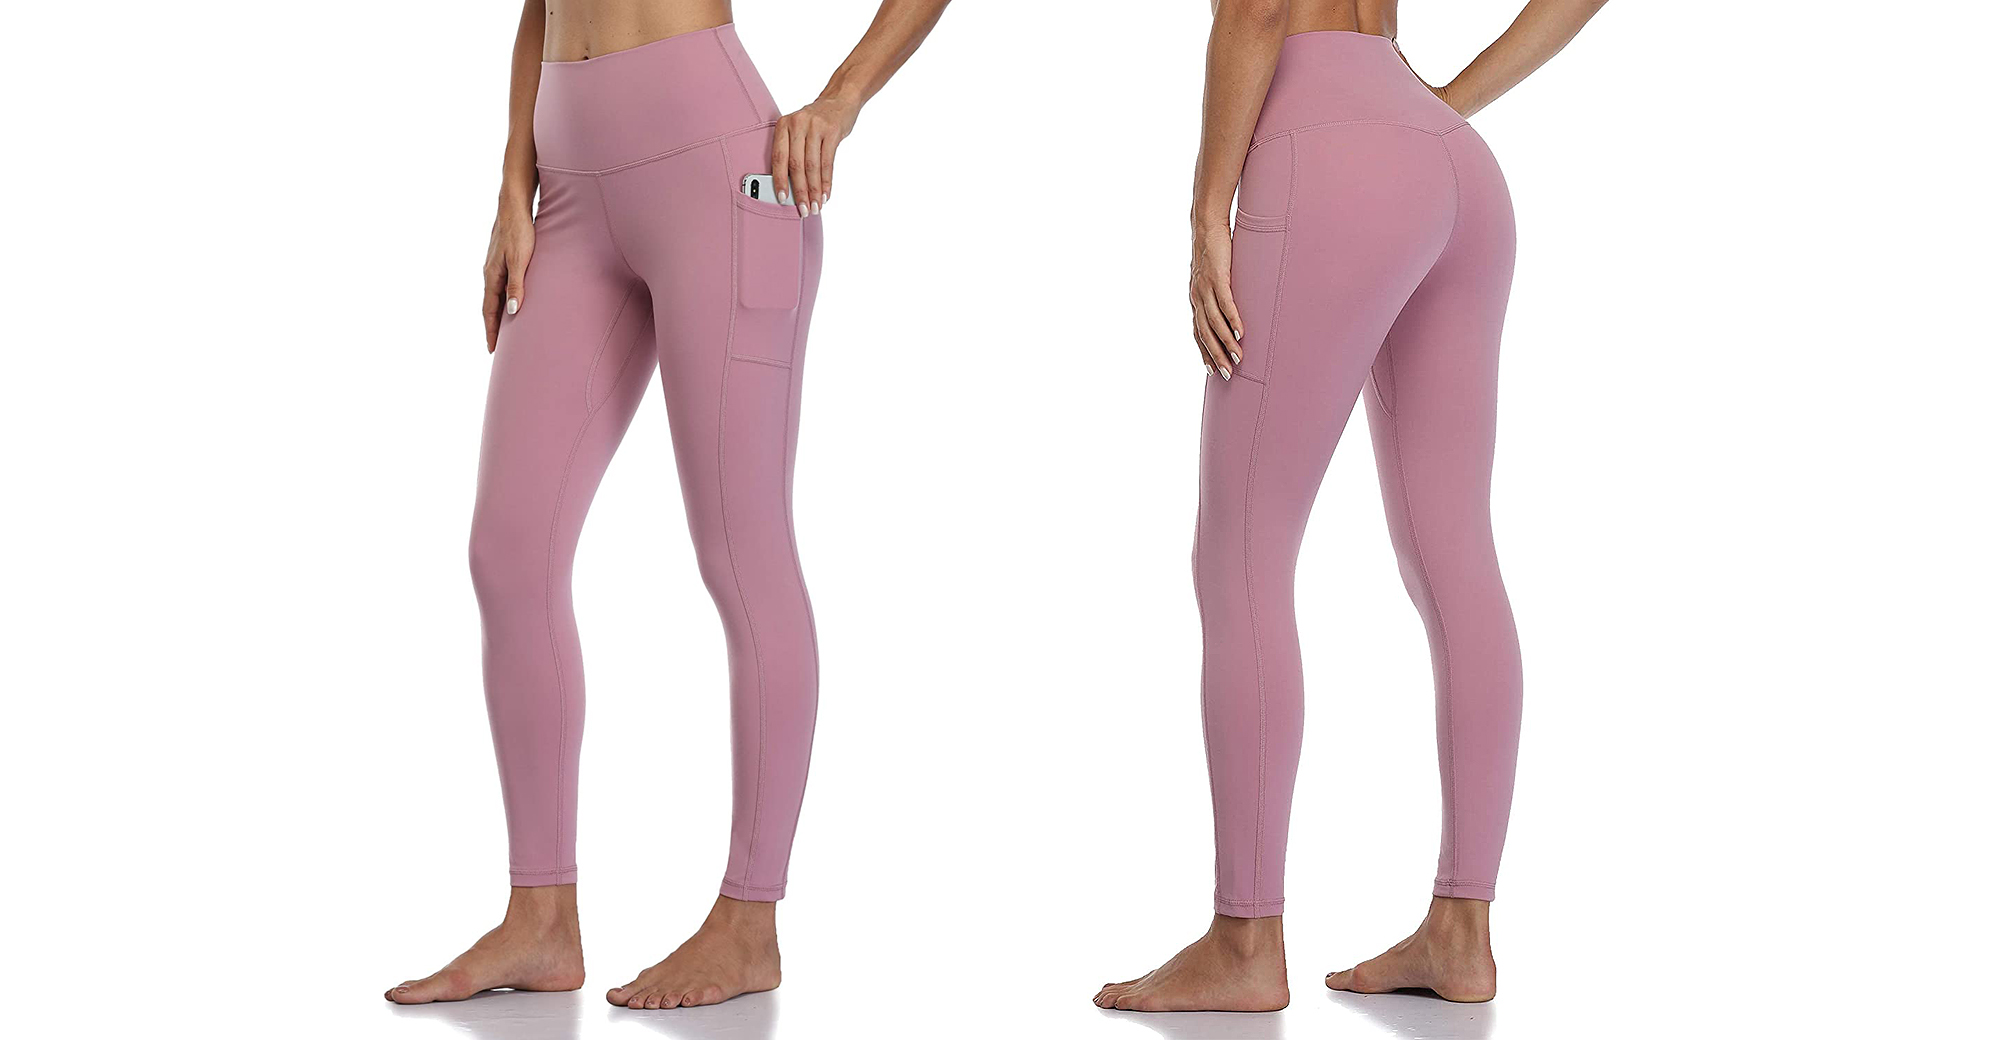 yoga pants that look like slacks